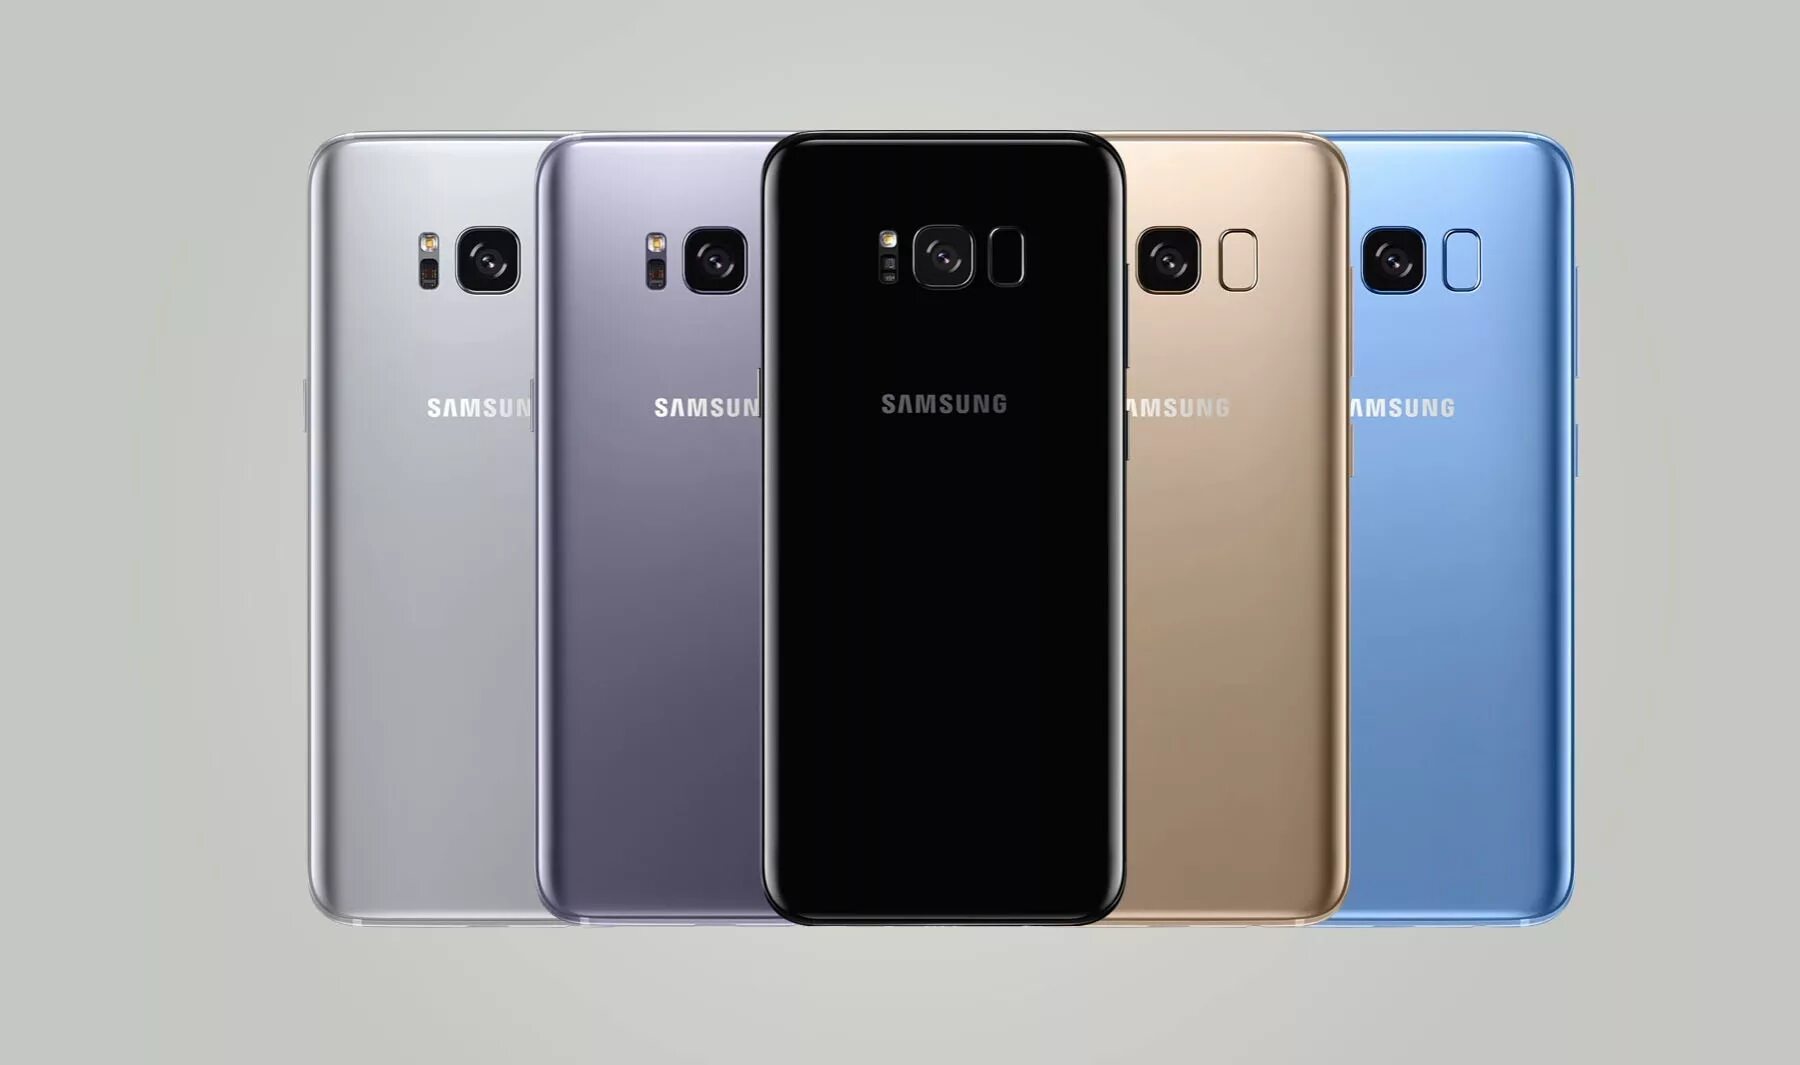 Samsung Galaxy s8 цвета. Samsung g950 Galaxy s8. Samsung s8 Plus цвета. Samsung Galaxy s8+ цвета. Werlerr s 8